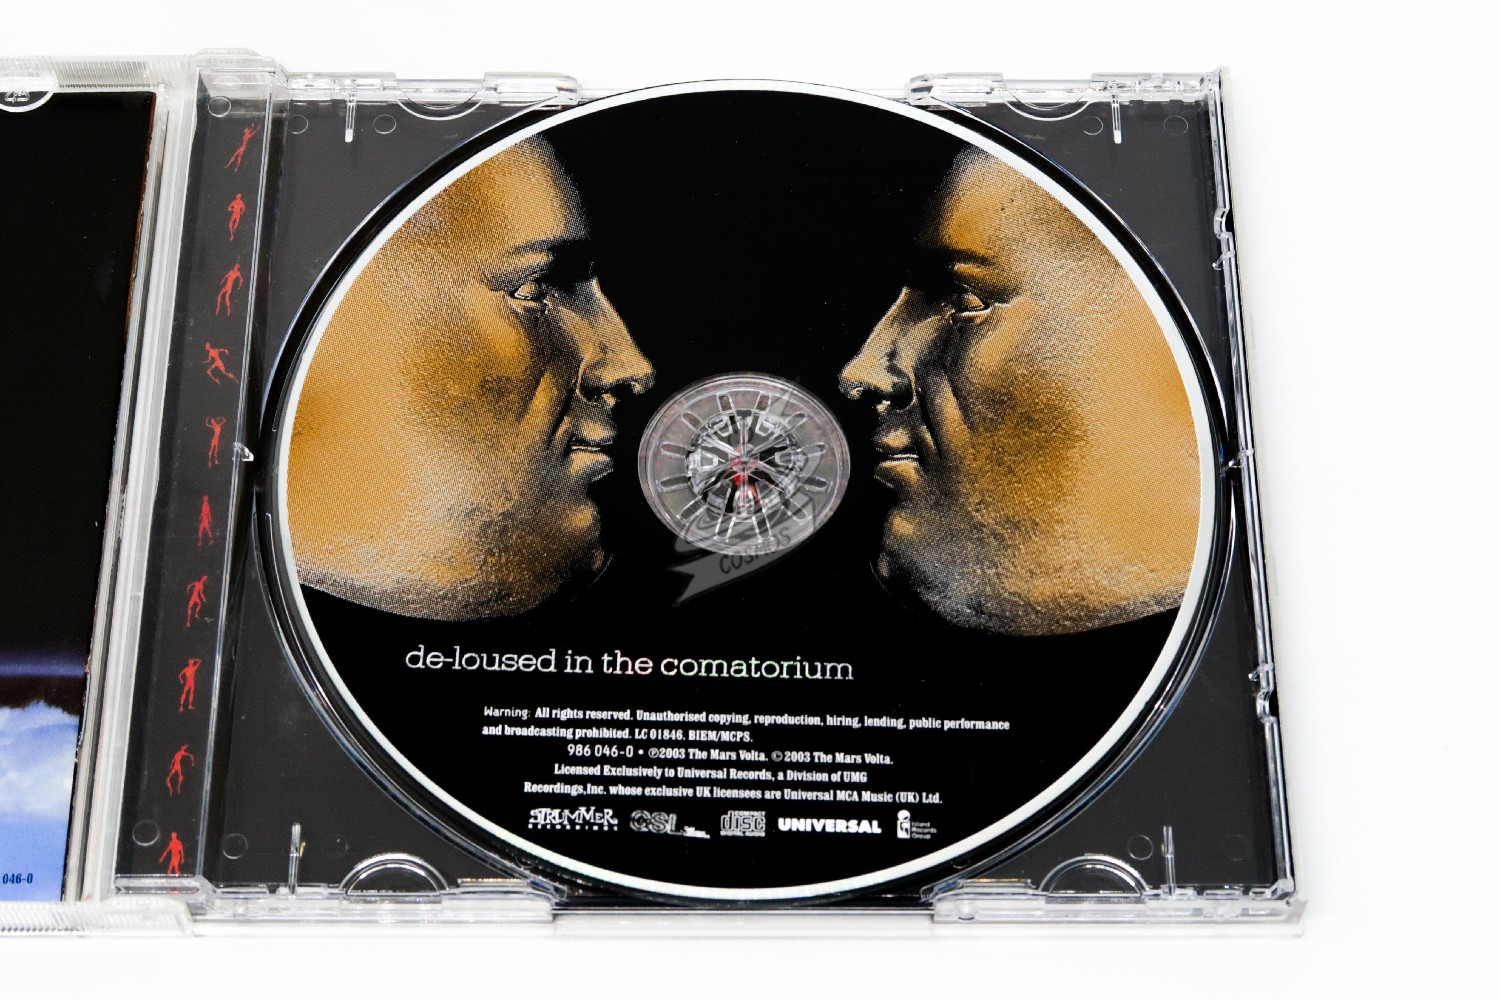 The Mars Volta - De Loused In The Comatorium - cdcosmos